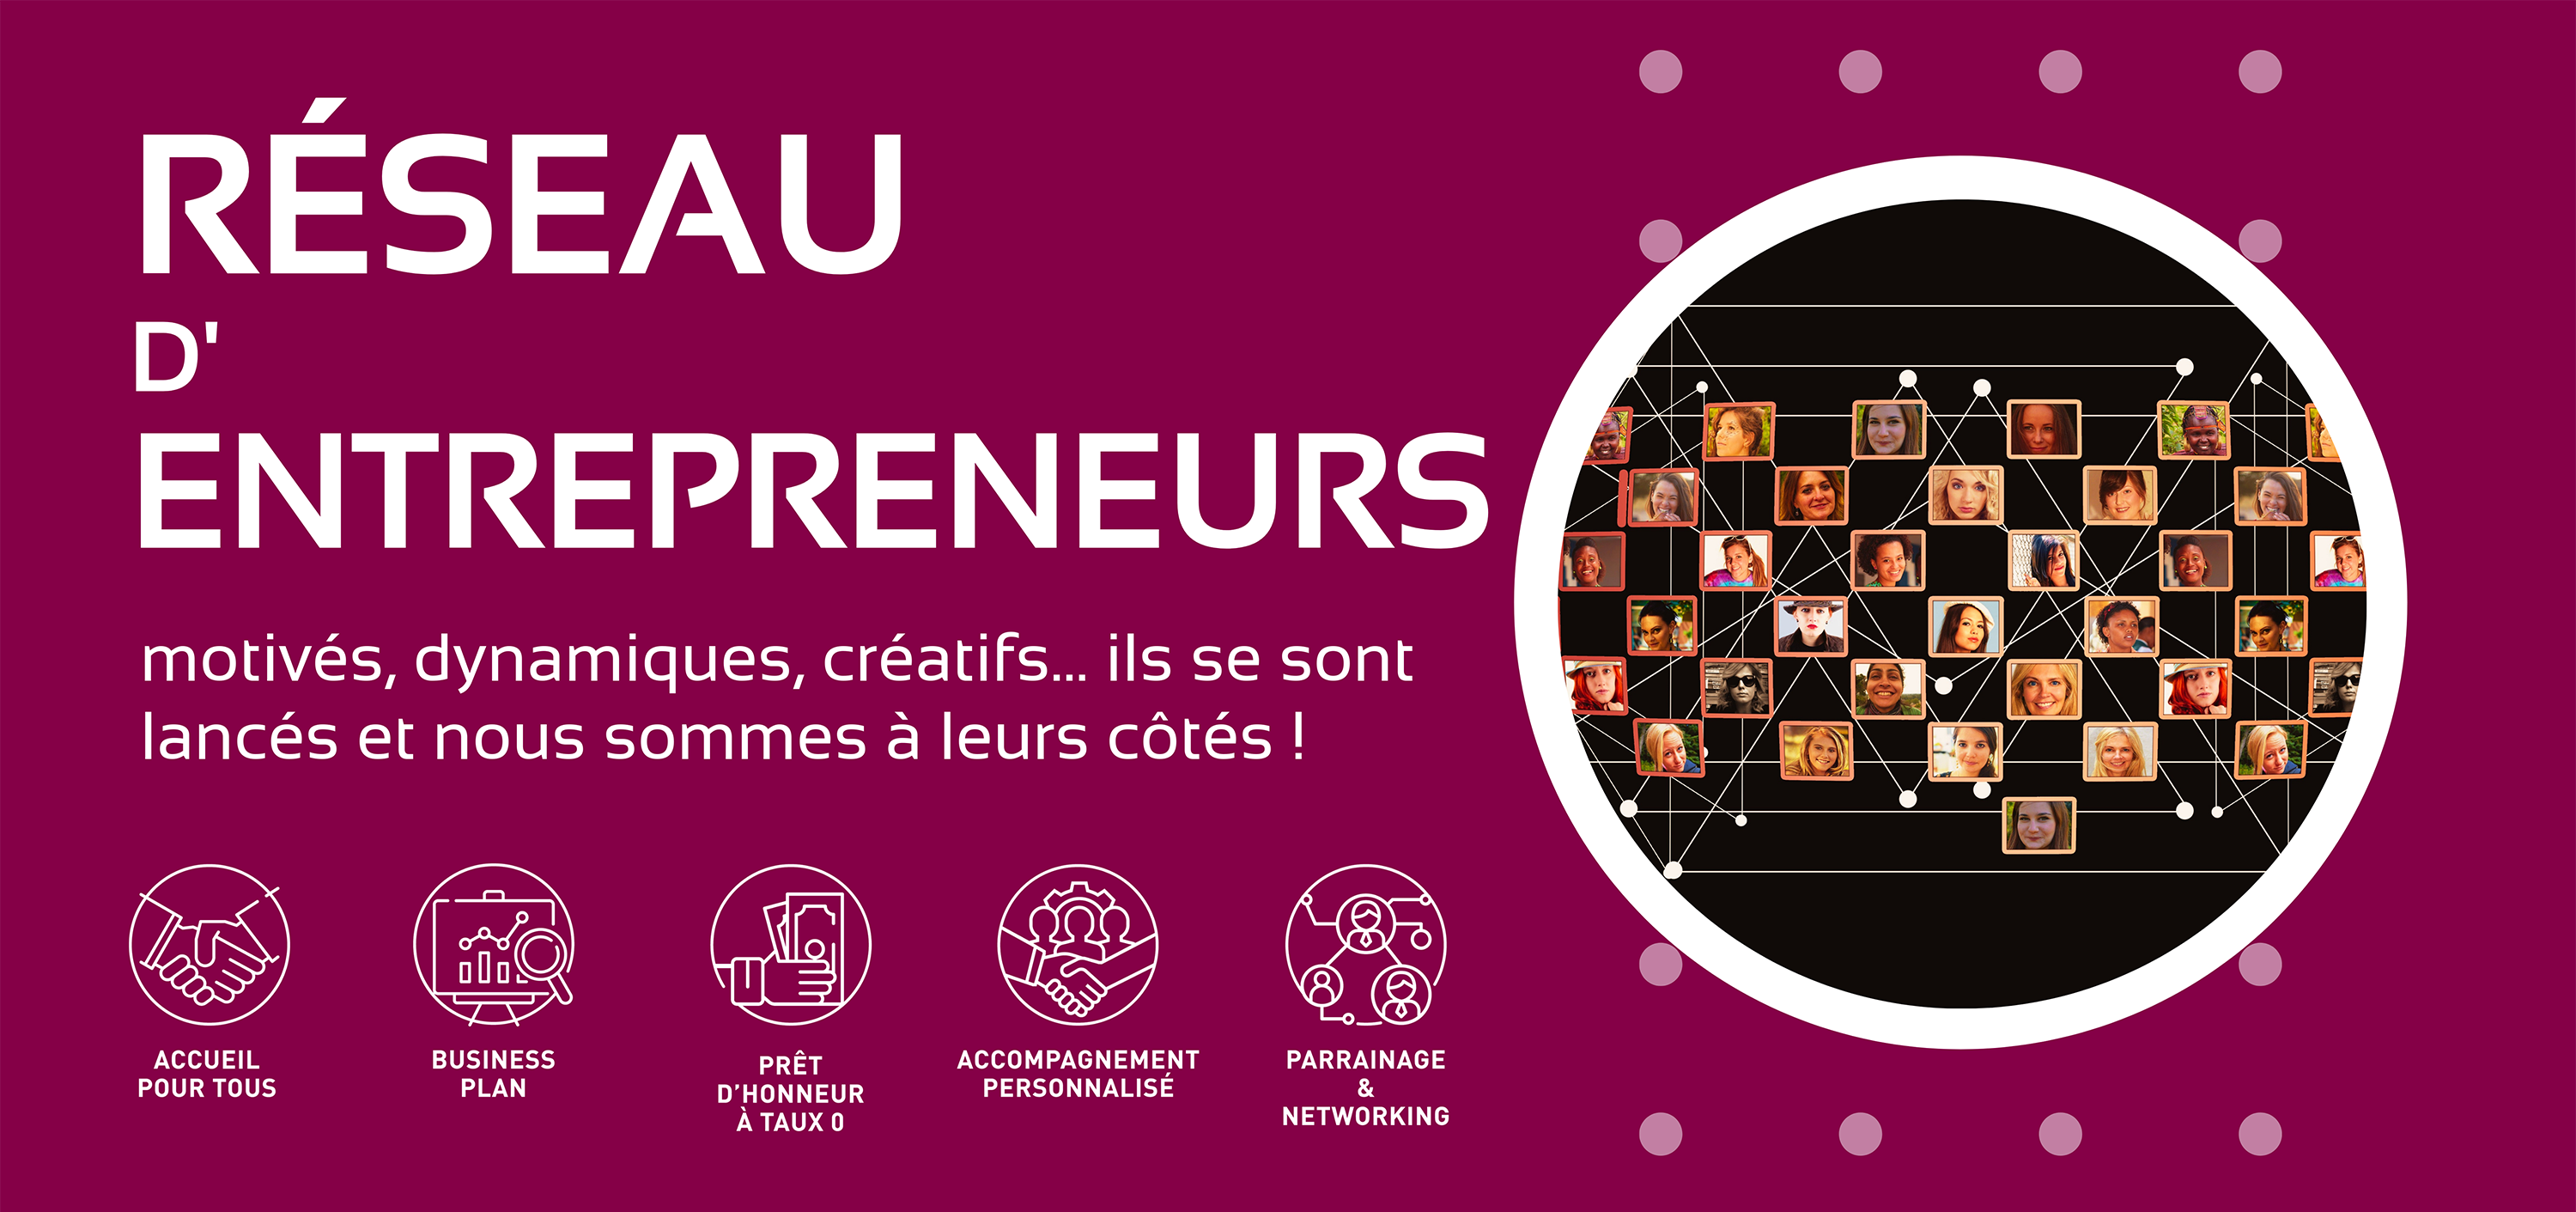 Banniere-web-IIVR_reseau-entrepreneurs